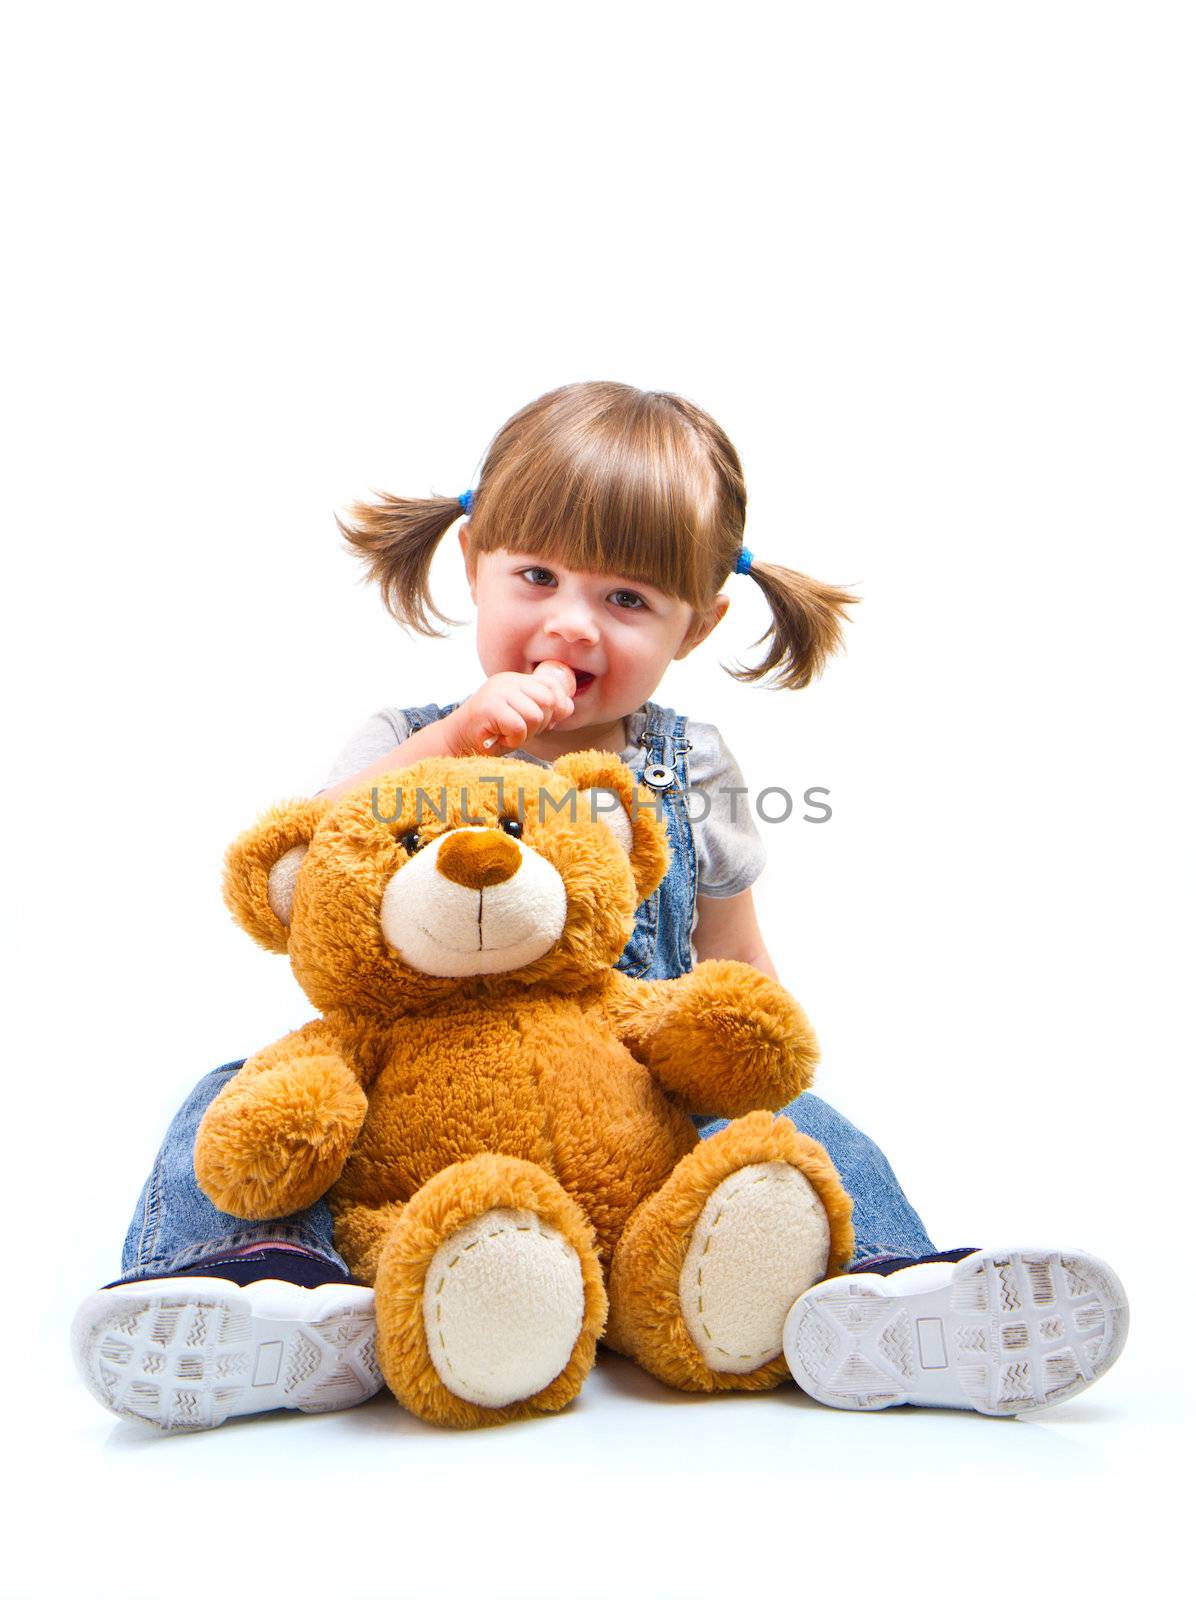 adorable toddler girl hugging a teddy bear